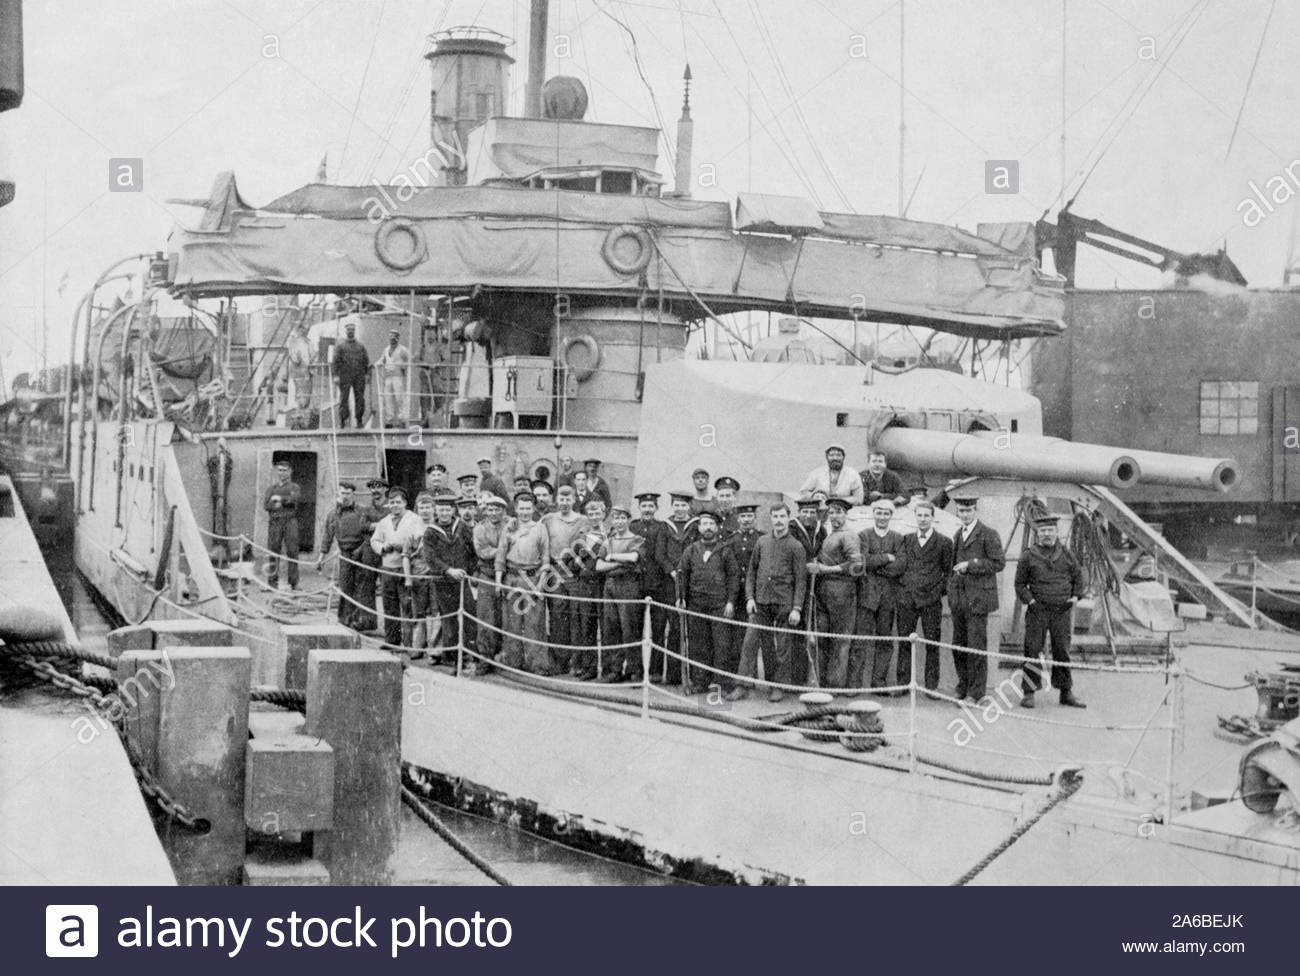 WW1 British Surveiller ship, vintage photographie de 1914 Banque D'Images